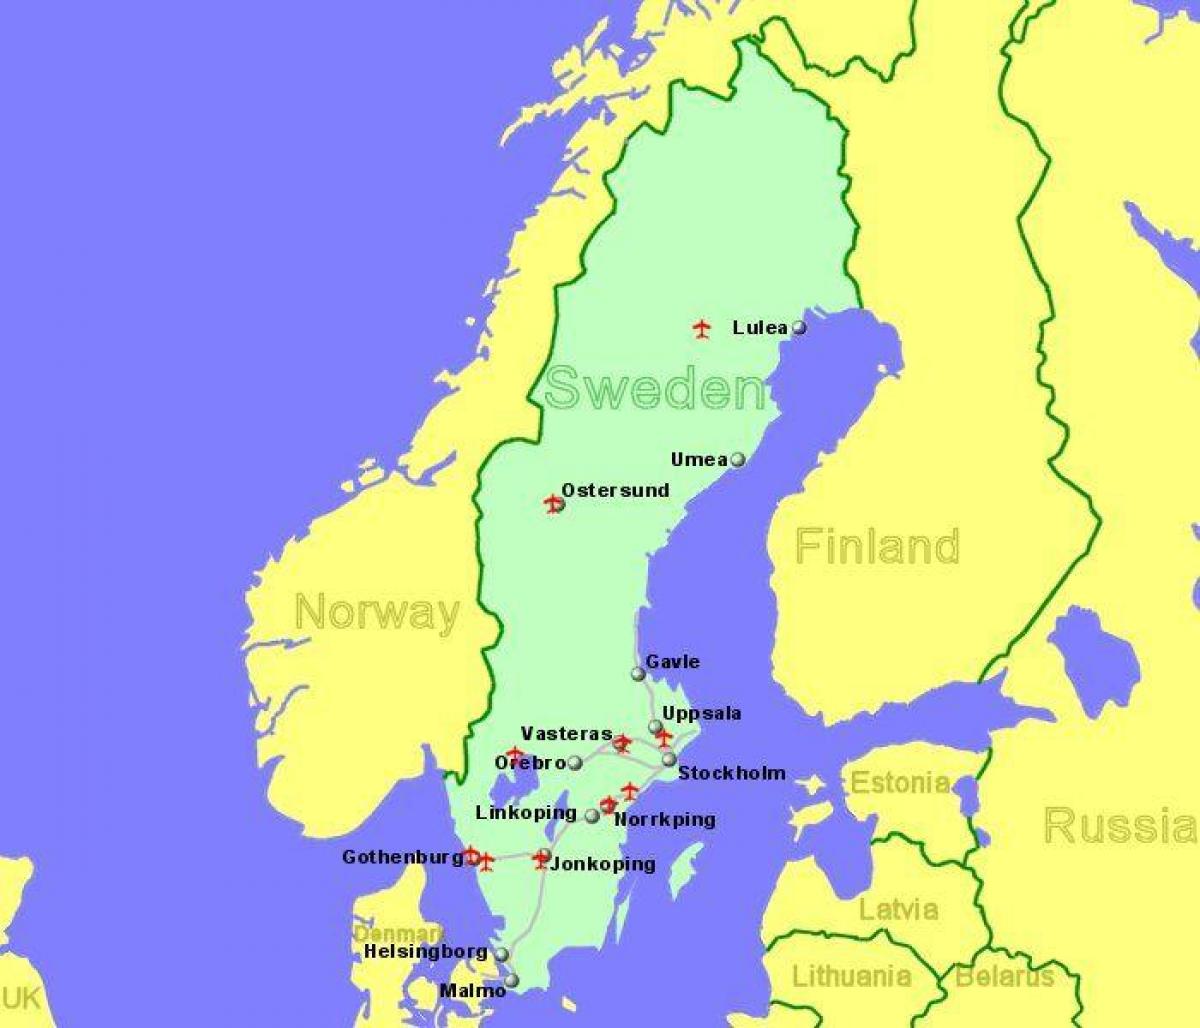 Flughäfen in Schweden-Landkarte - Karte der Flughäfen in Schweden